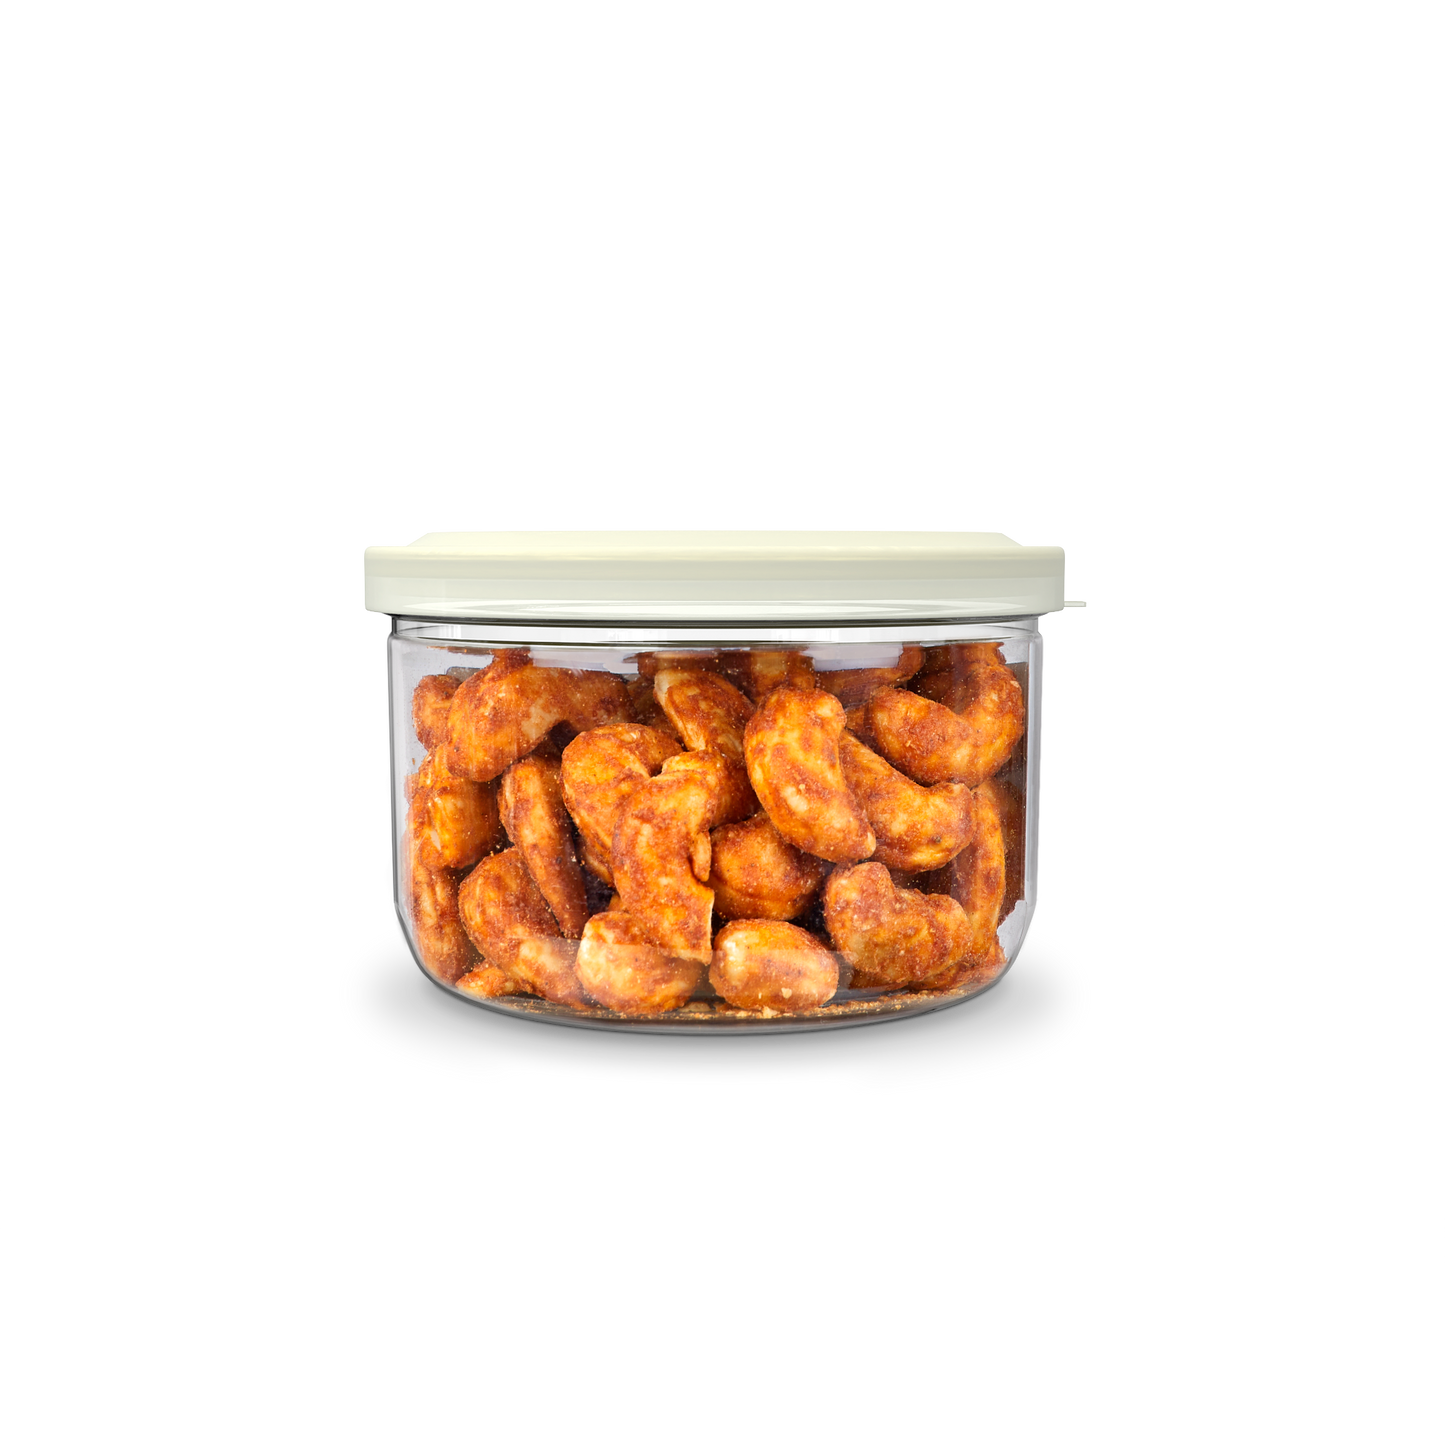 SAO Foods Peri Peri Roasted Cashews 100 gm | Tin Cap PET Jar